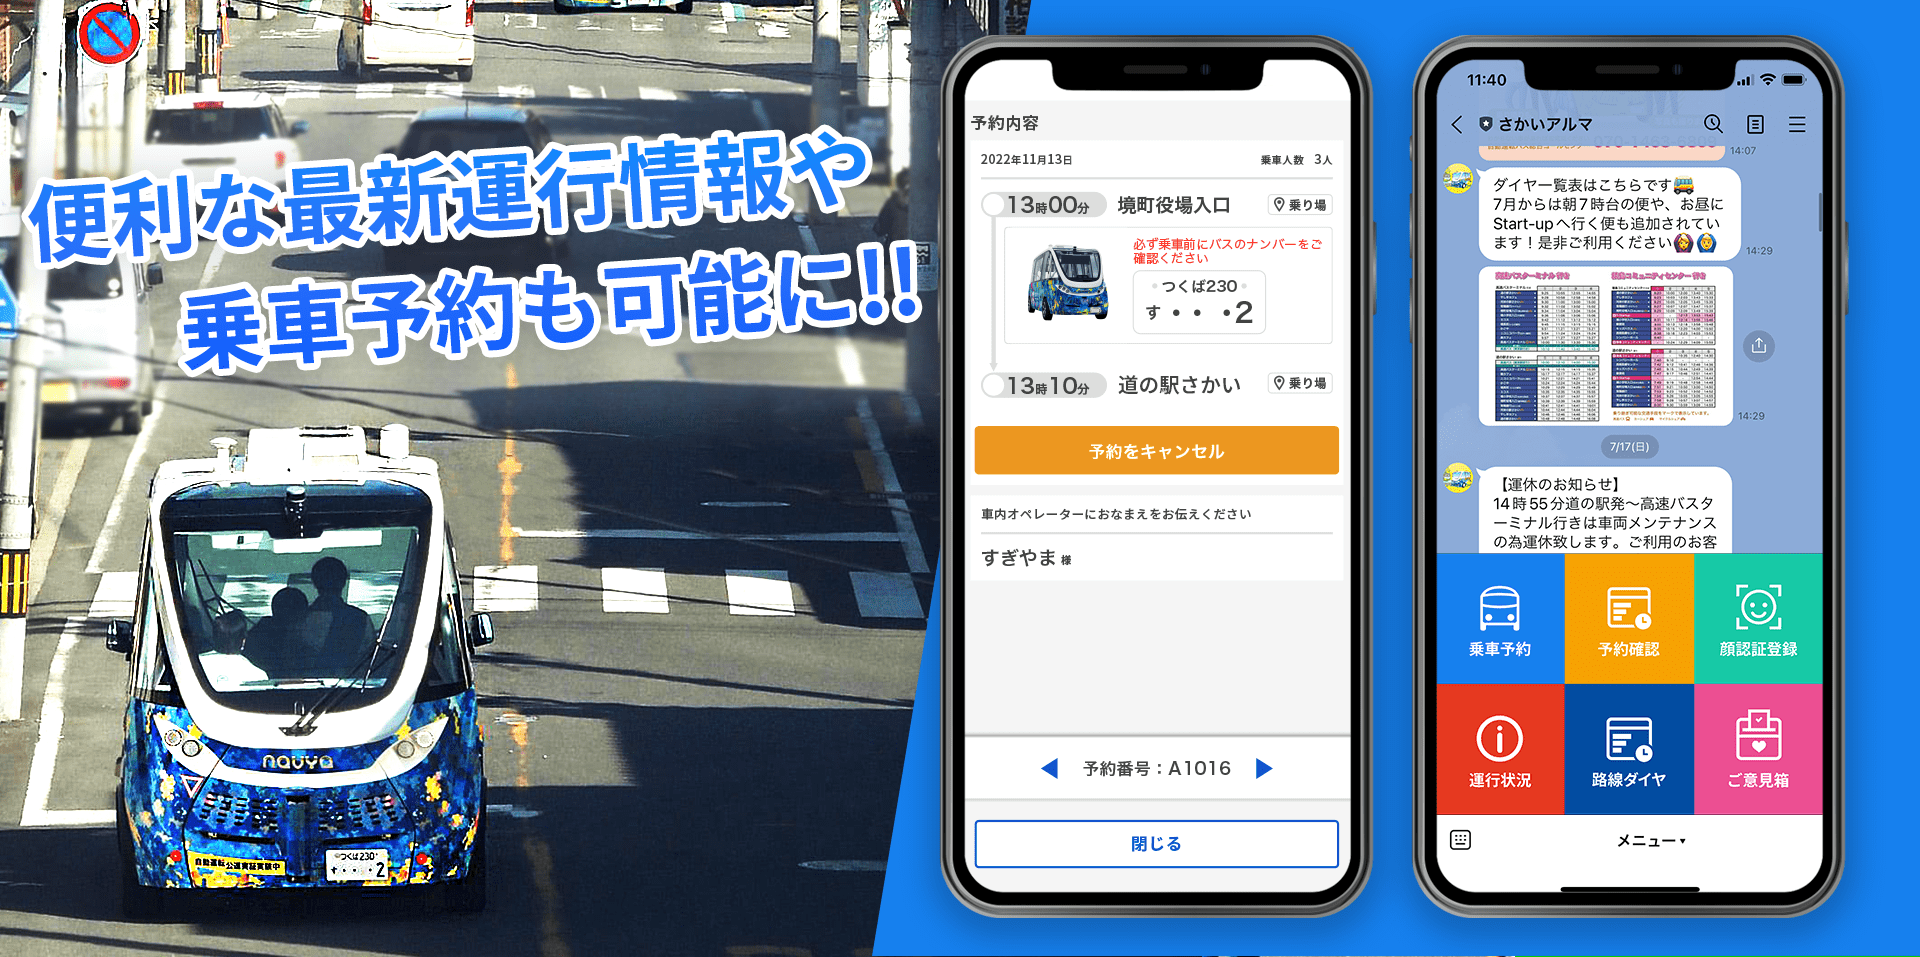 茨城県境町から始まるLINEを使った自動運転バスのオンデマンド予約システム